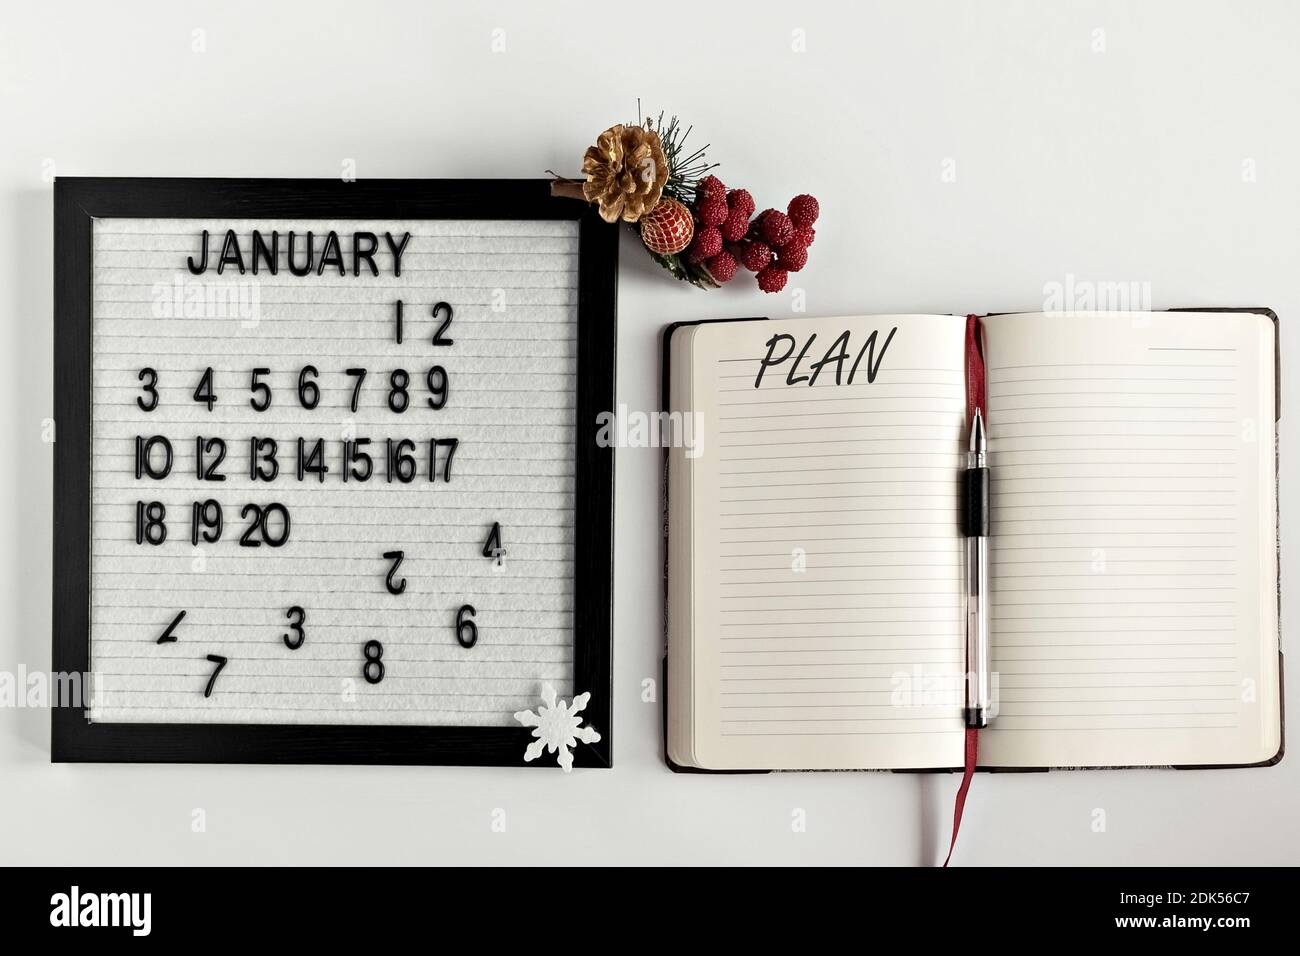 Notizblock für Notizen zu Zielen und Plänen für das neue Jahr, Kalender und Weihnachtsbaumschmuck auf dem Desktop. Inschrift in englischer Ebene. Stockfoto